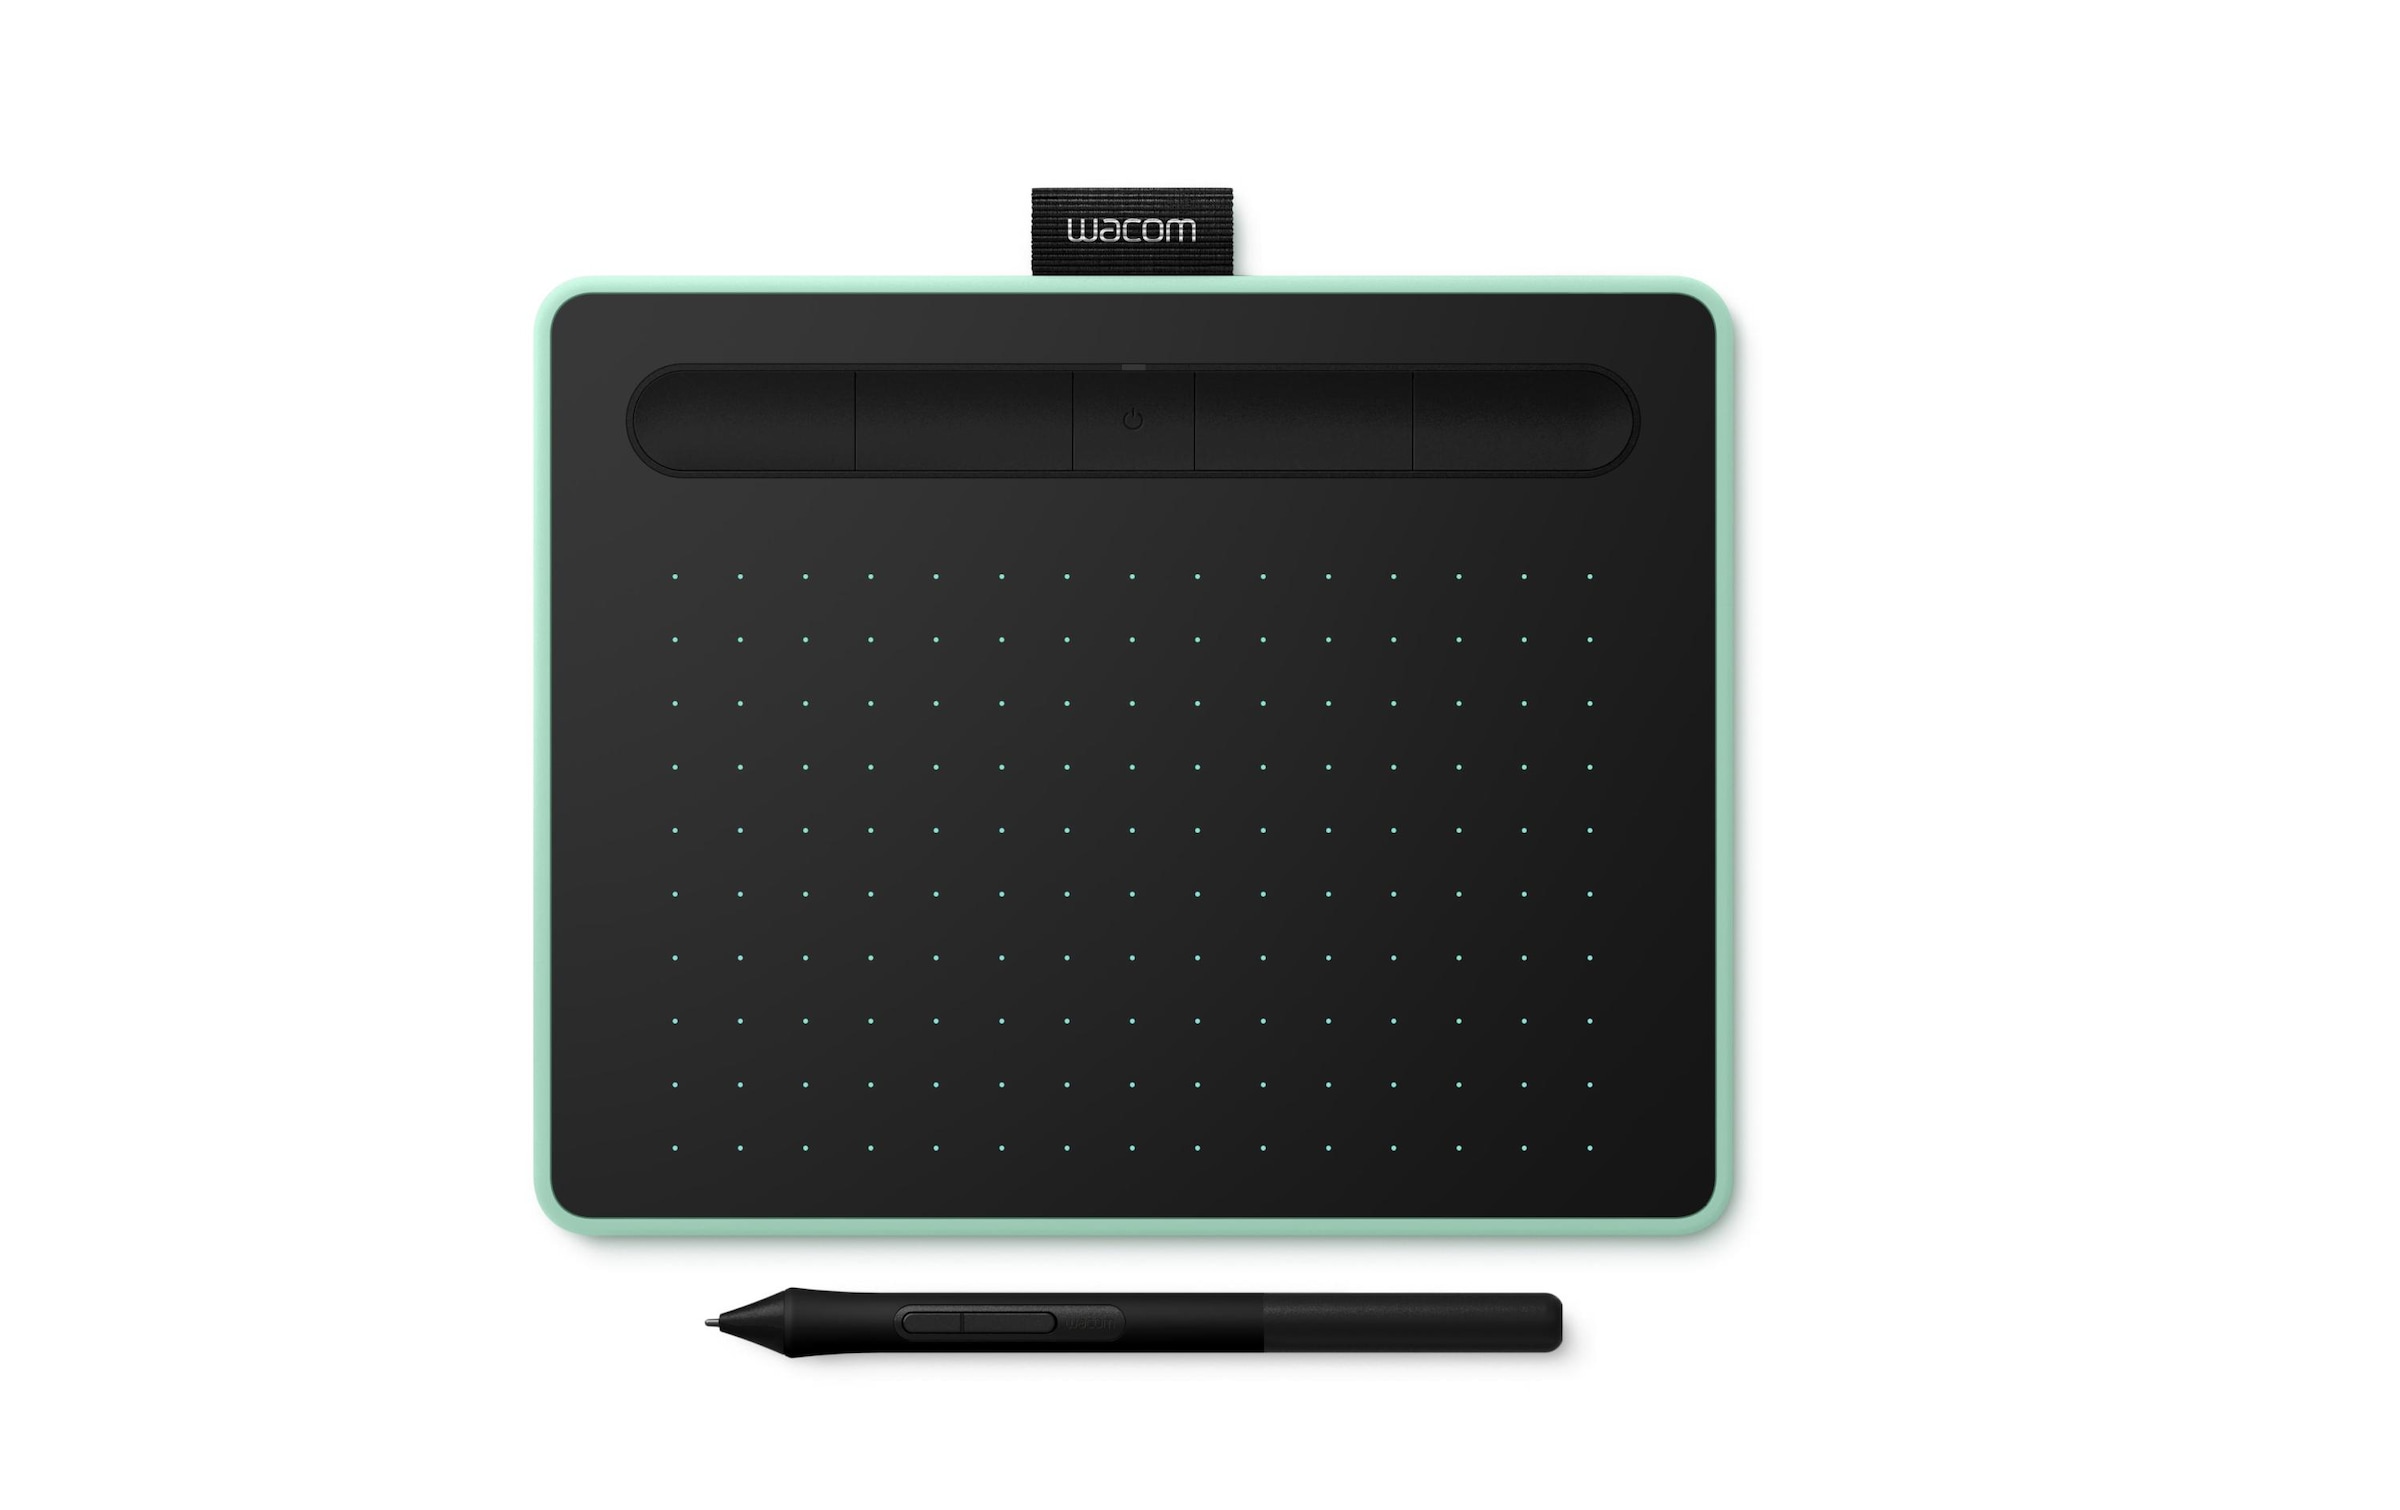 Grafiktablett »Stifttablet Intuos M BT Creative Pen Tablet«